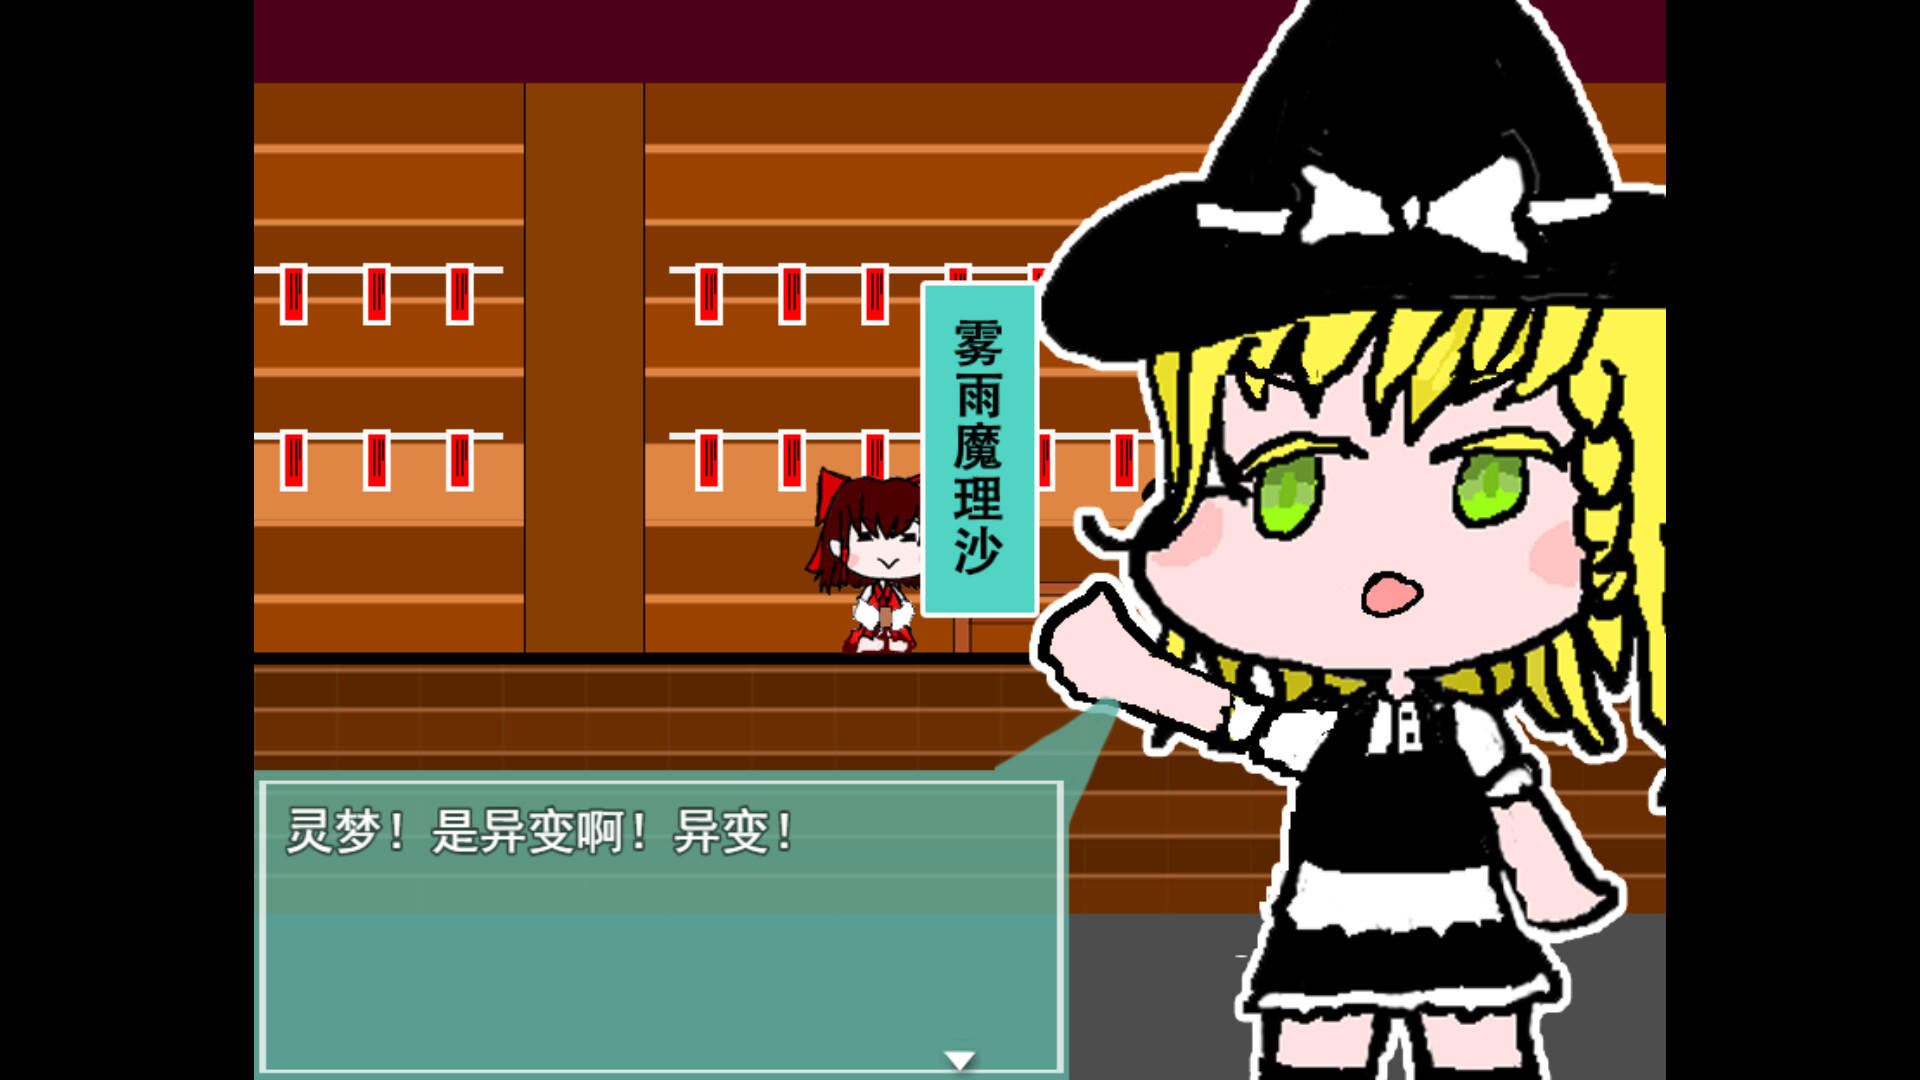 Screenshot of 灵梦的激急击鸡祭 Reimu's Fighting Chicken Festival